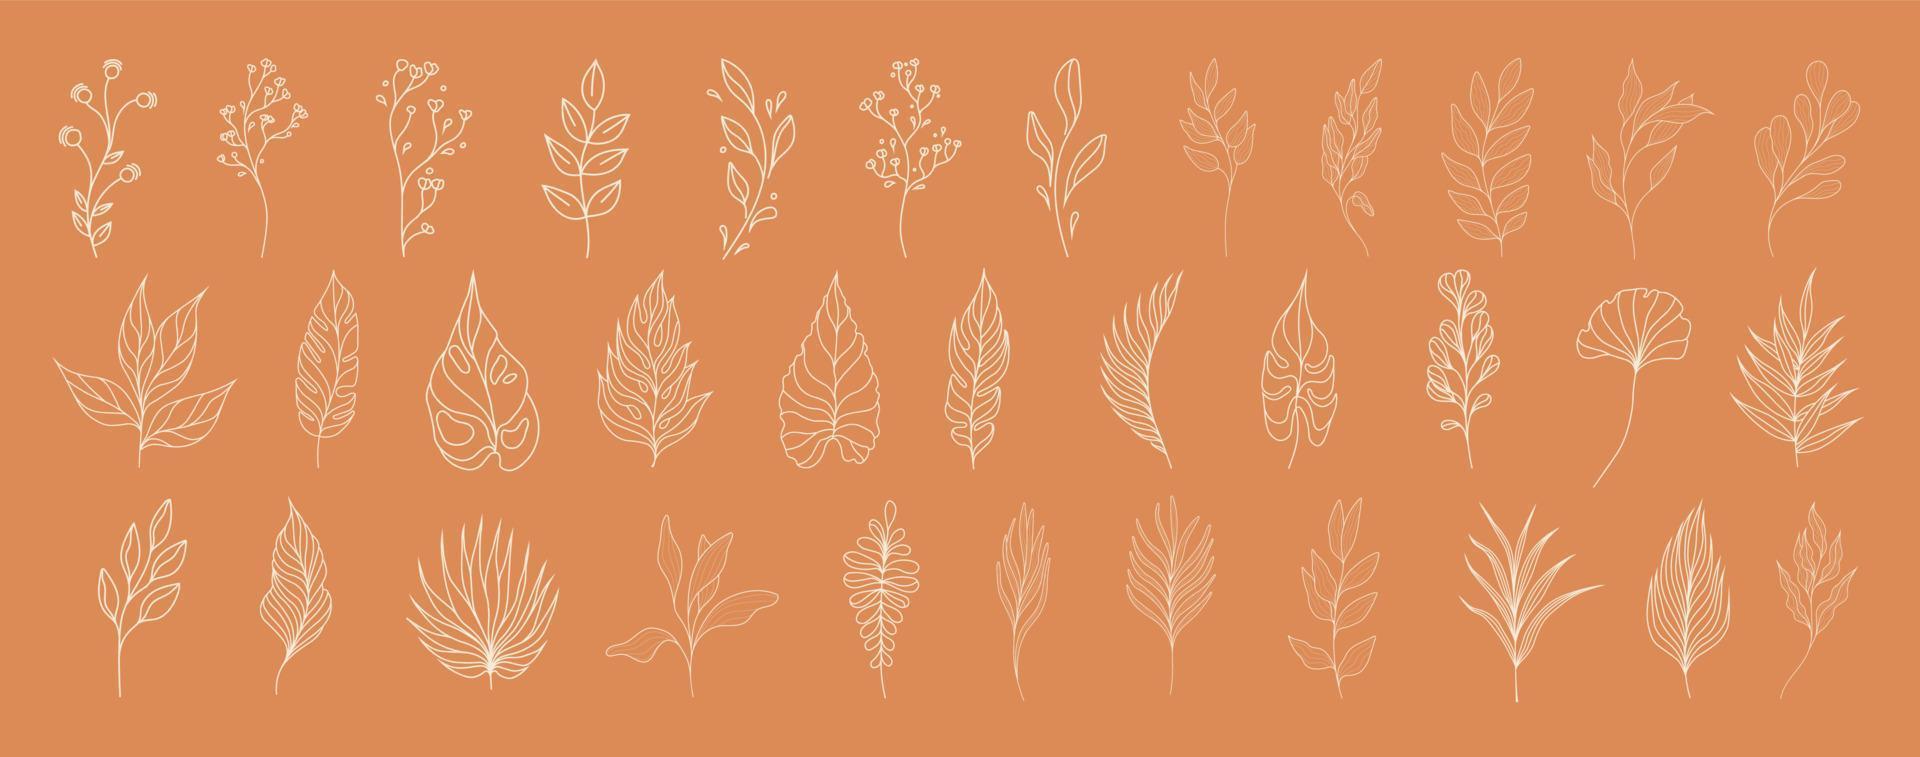 conjunto de hojas. plantas tropicales. herbario. perfecto para diseños de productos a base de hierbas. vector